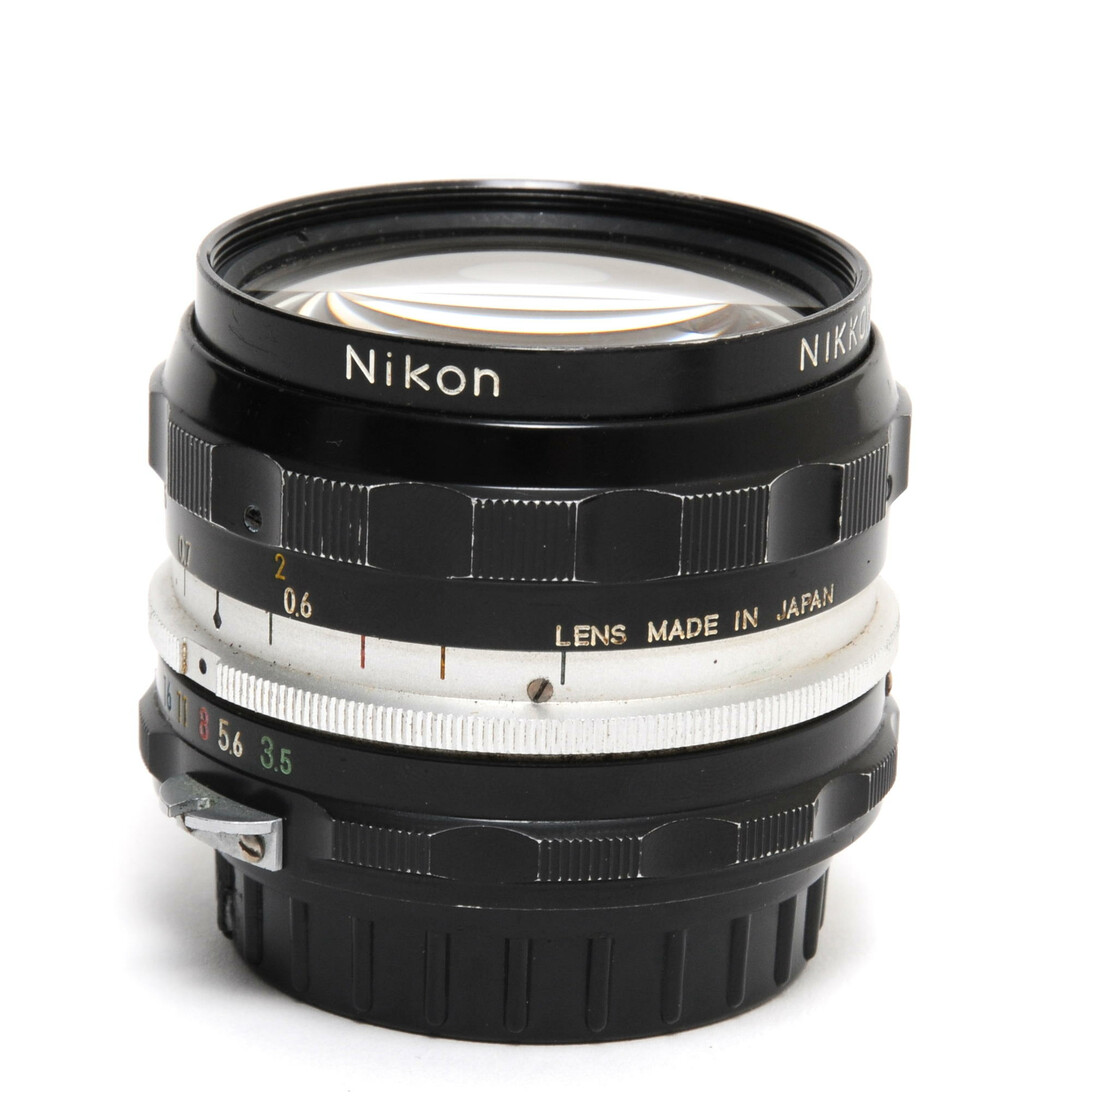 Nikon Nikkor-H Auto 3,5/28mm lens MF with caps Nikon A, 99,00 €